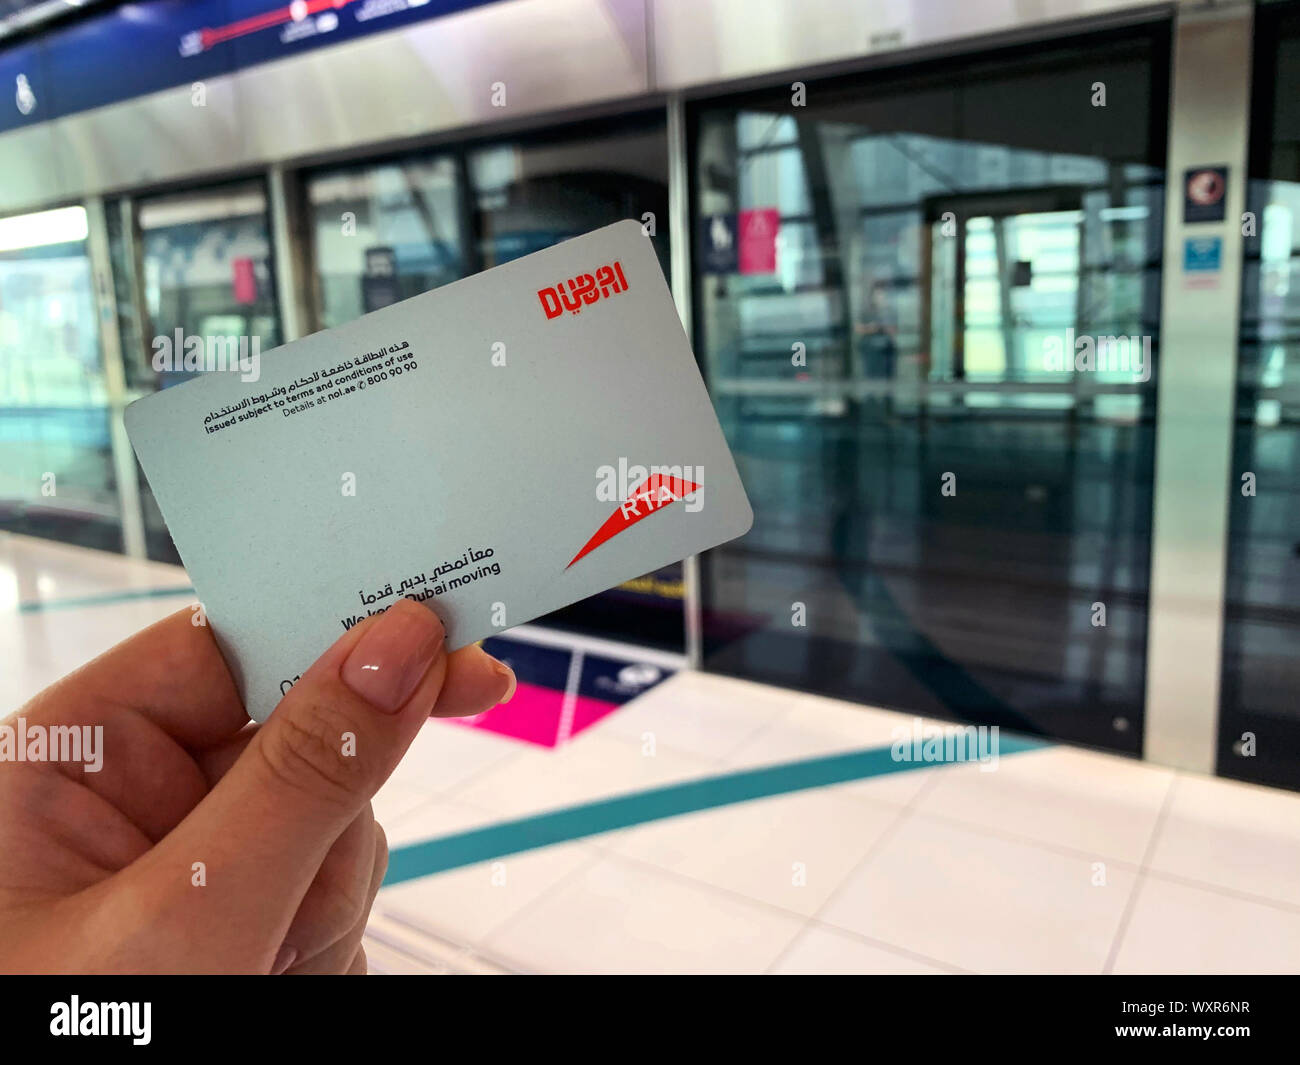 Dubai - Emiratos Árabes Unidos - 17 de septiembre de 2019: Una mujer sostiene NOL tarjeta de metro mientras espera el tren del metro en Dubai Foto de stock